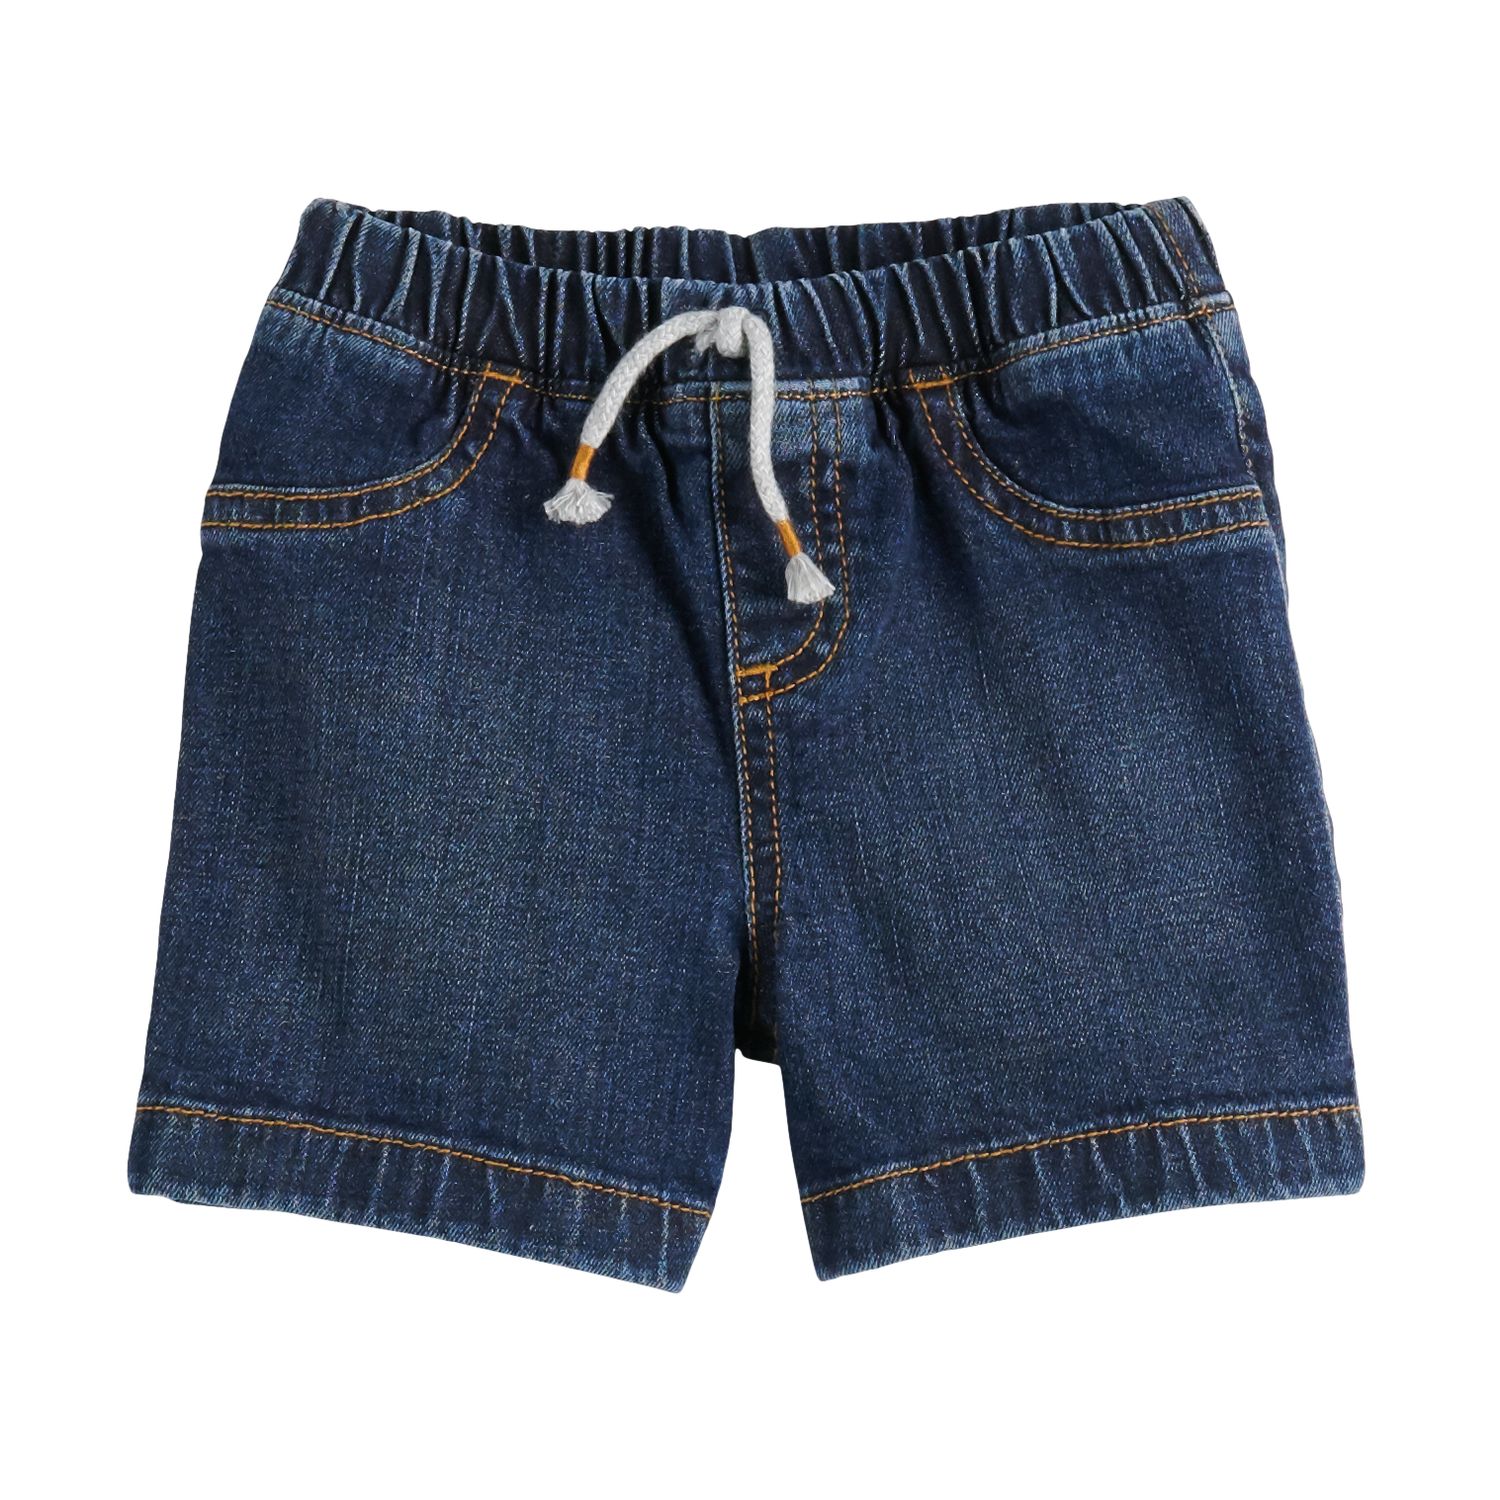 denim shorts for baby boy